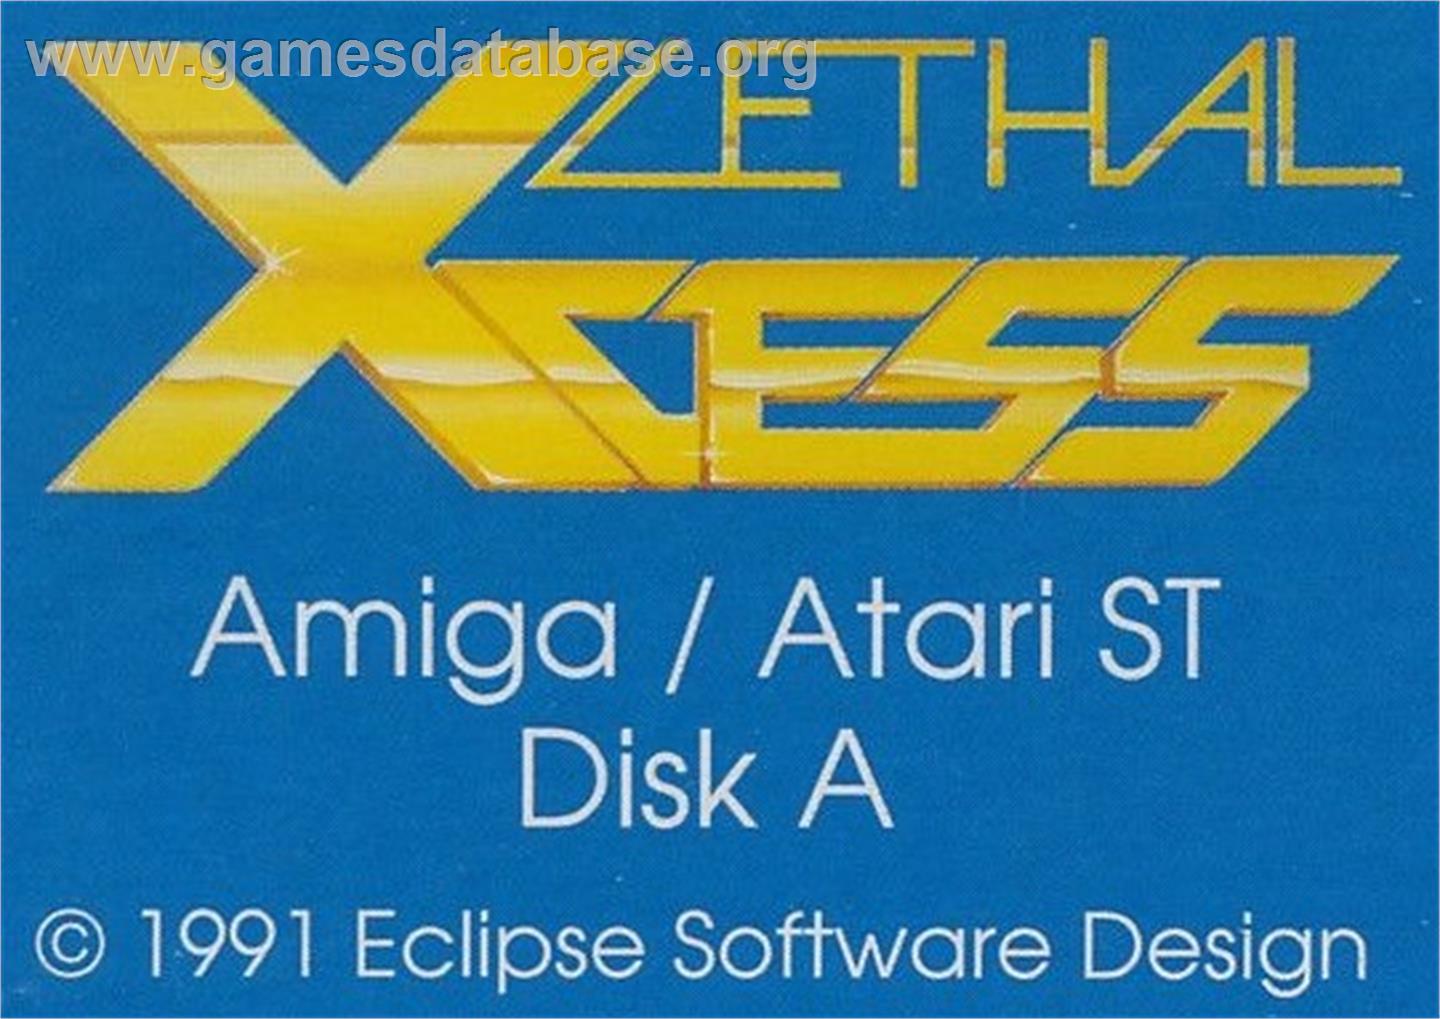 Lethal Xcess: Wings of Death 2 - Atari ST - Artwork - Cartridge Top